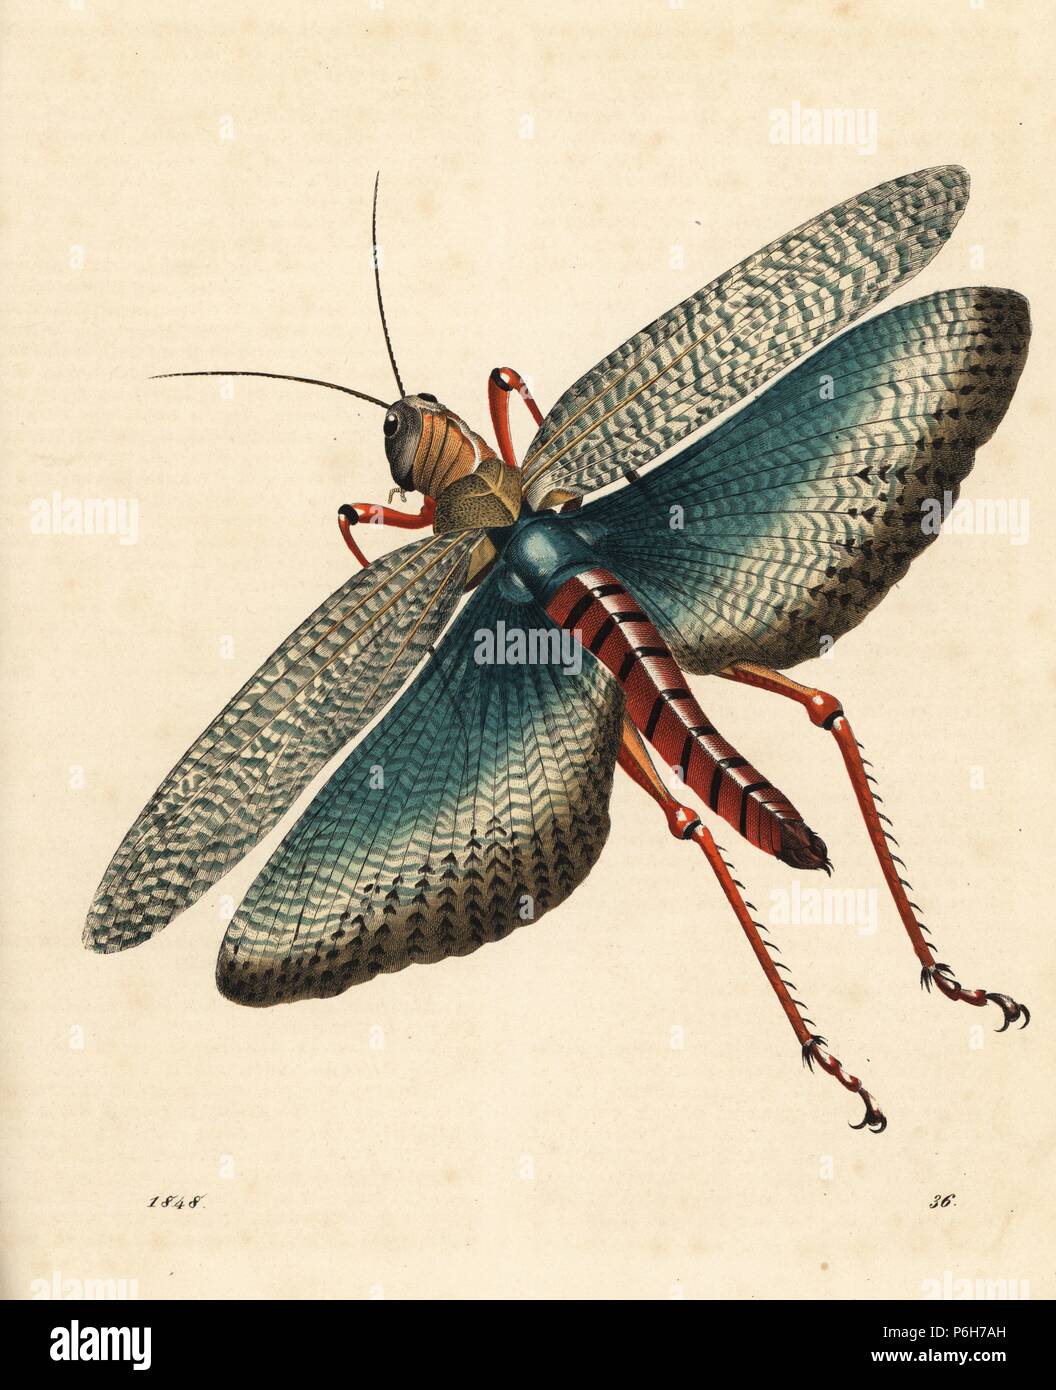 Criquet indien, Gryllus indicus (Schistocerca gregaria ?). Lithographie coloriée de Carl Hoffmann's Book of the World, Stuttgart, 1848. Banque D'Images